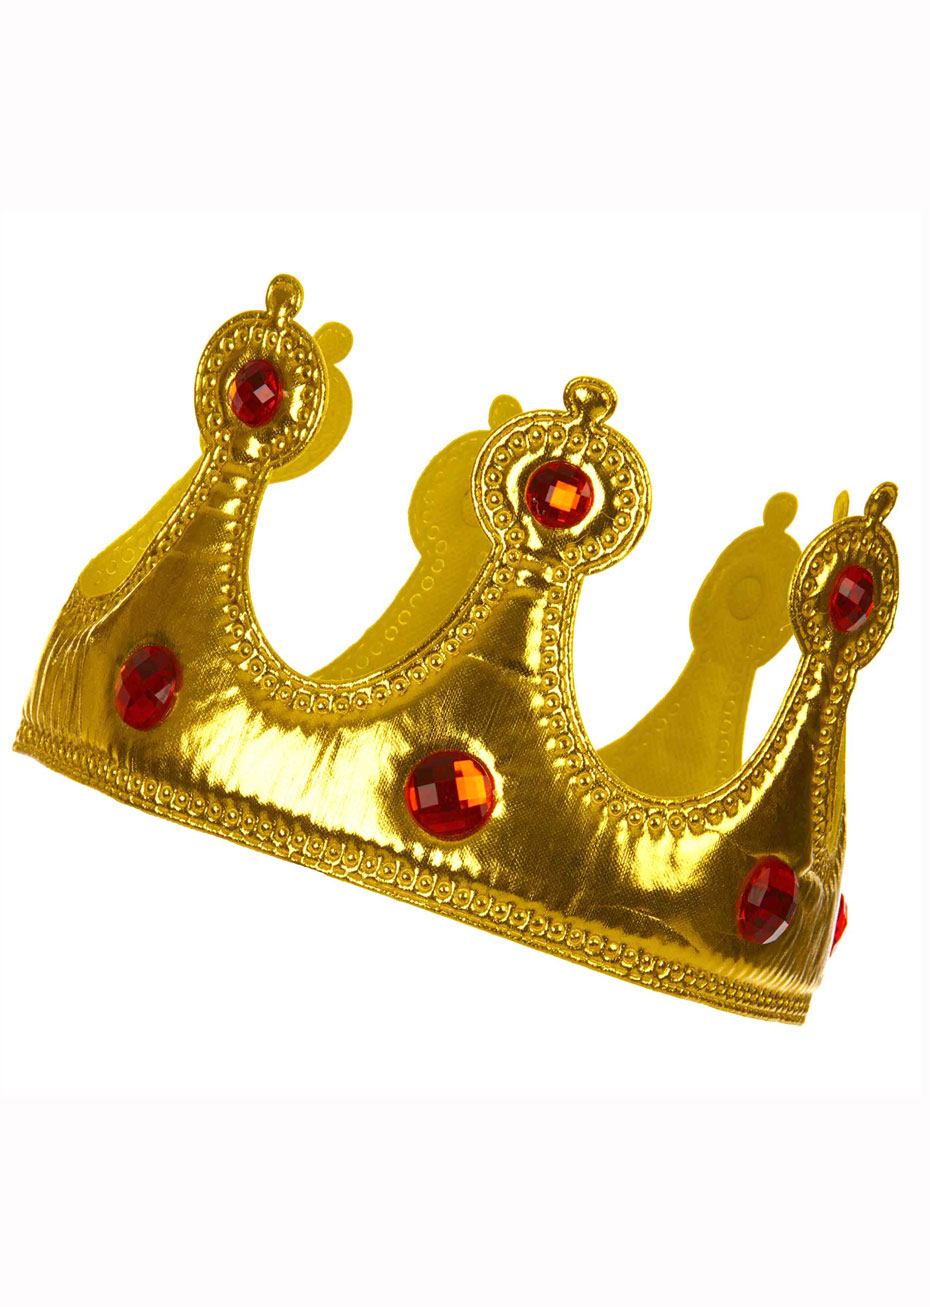 Vente accessoire roi pas cher, couronne royale avec fausses pierres